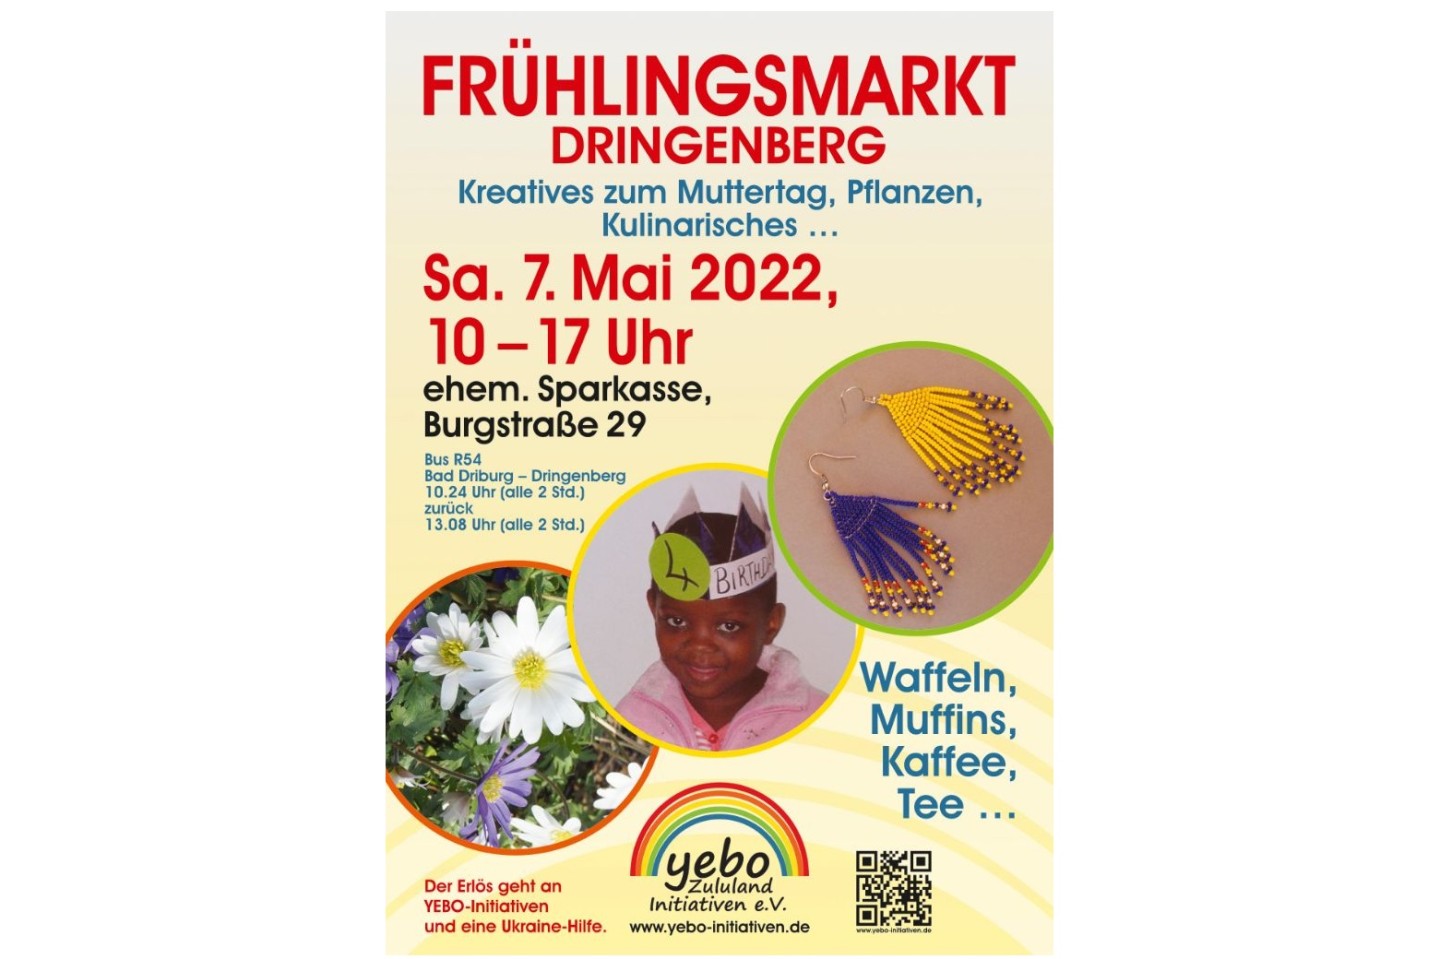 Frühlingsmarkt Dringenberg am Samstag, den 07.05.2022 von 10.00 - 17.00 Uhr Kreatives zum Muttertag, Pflanzen, Kulinarisches und mehr